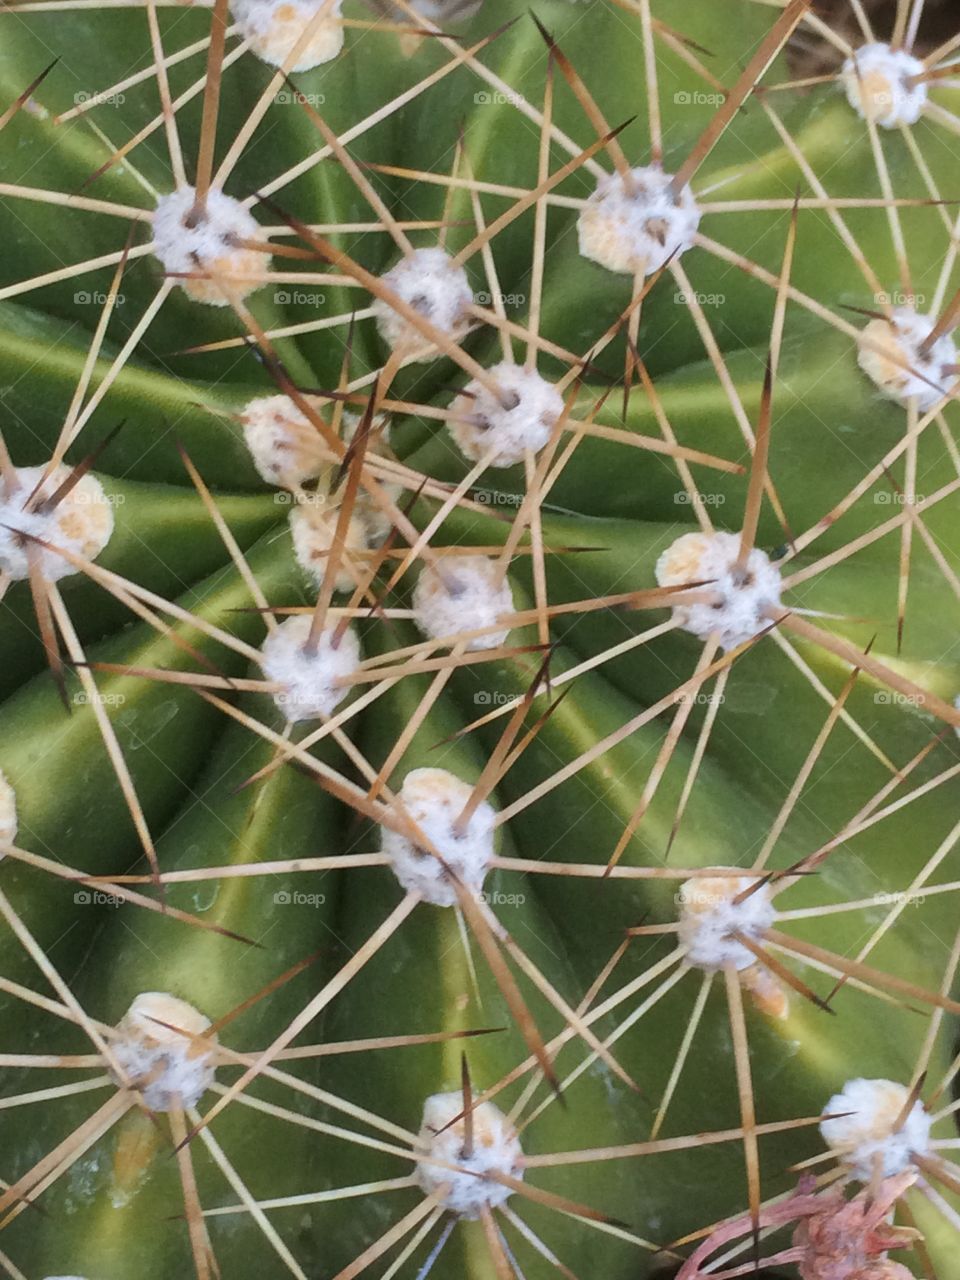 Cactus thorns . Cactus thorns
